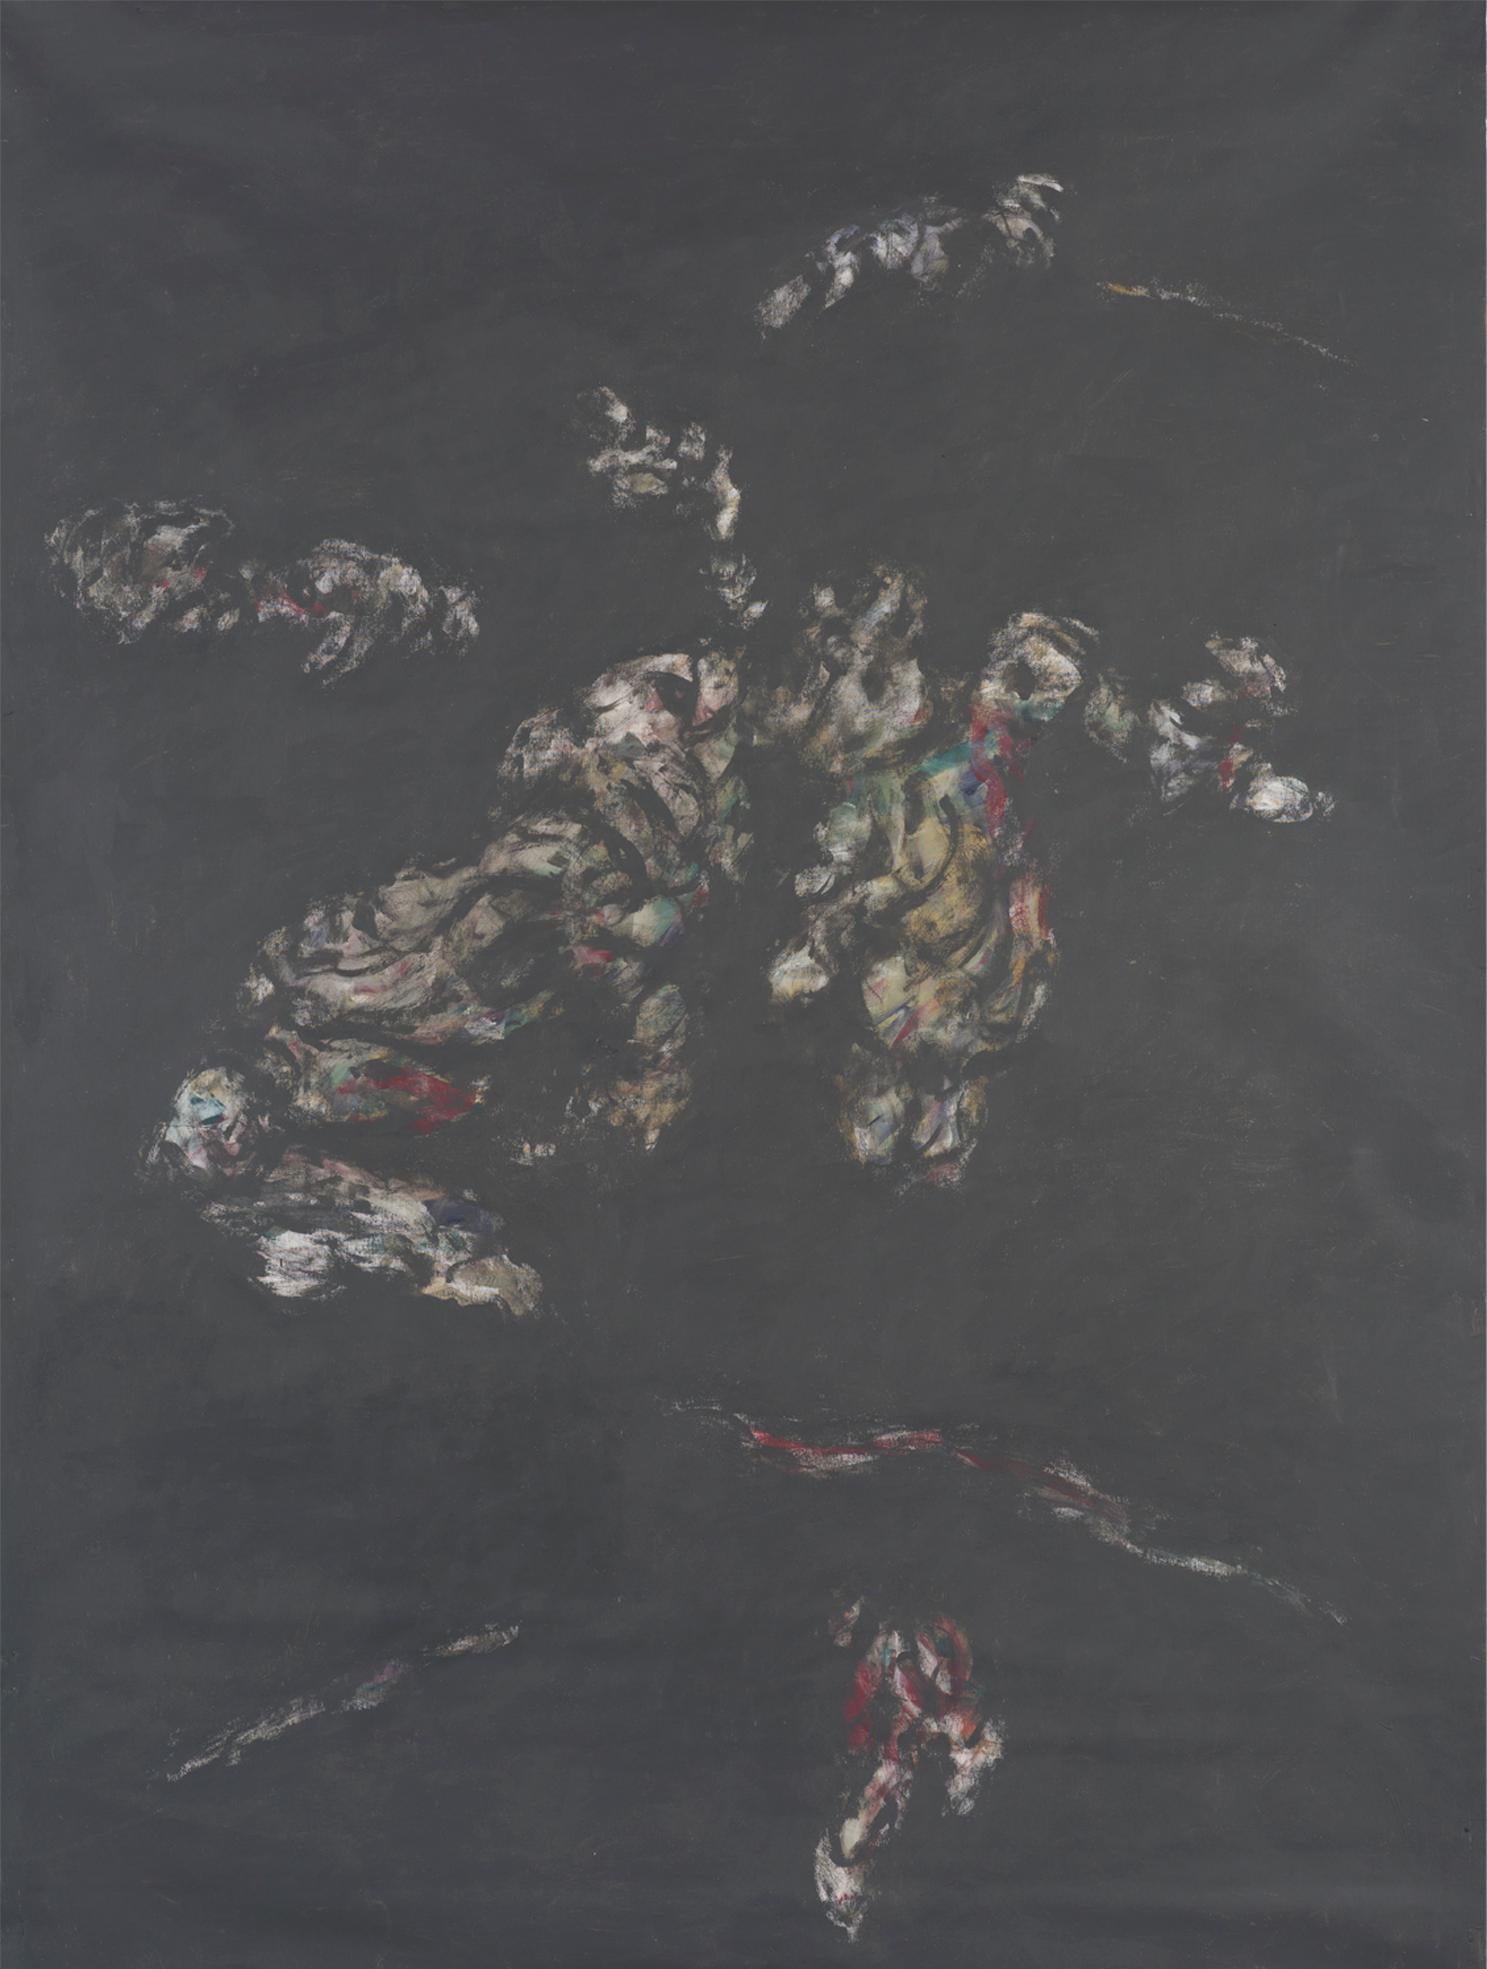 Abstract Painting Zsolt Berszán - Sans titre 07 - 21e siècle, noir, minimaliste, rouge, jaune, art contemporain